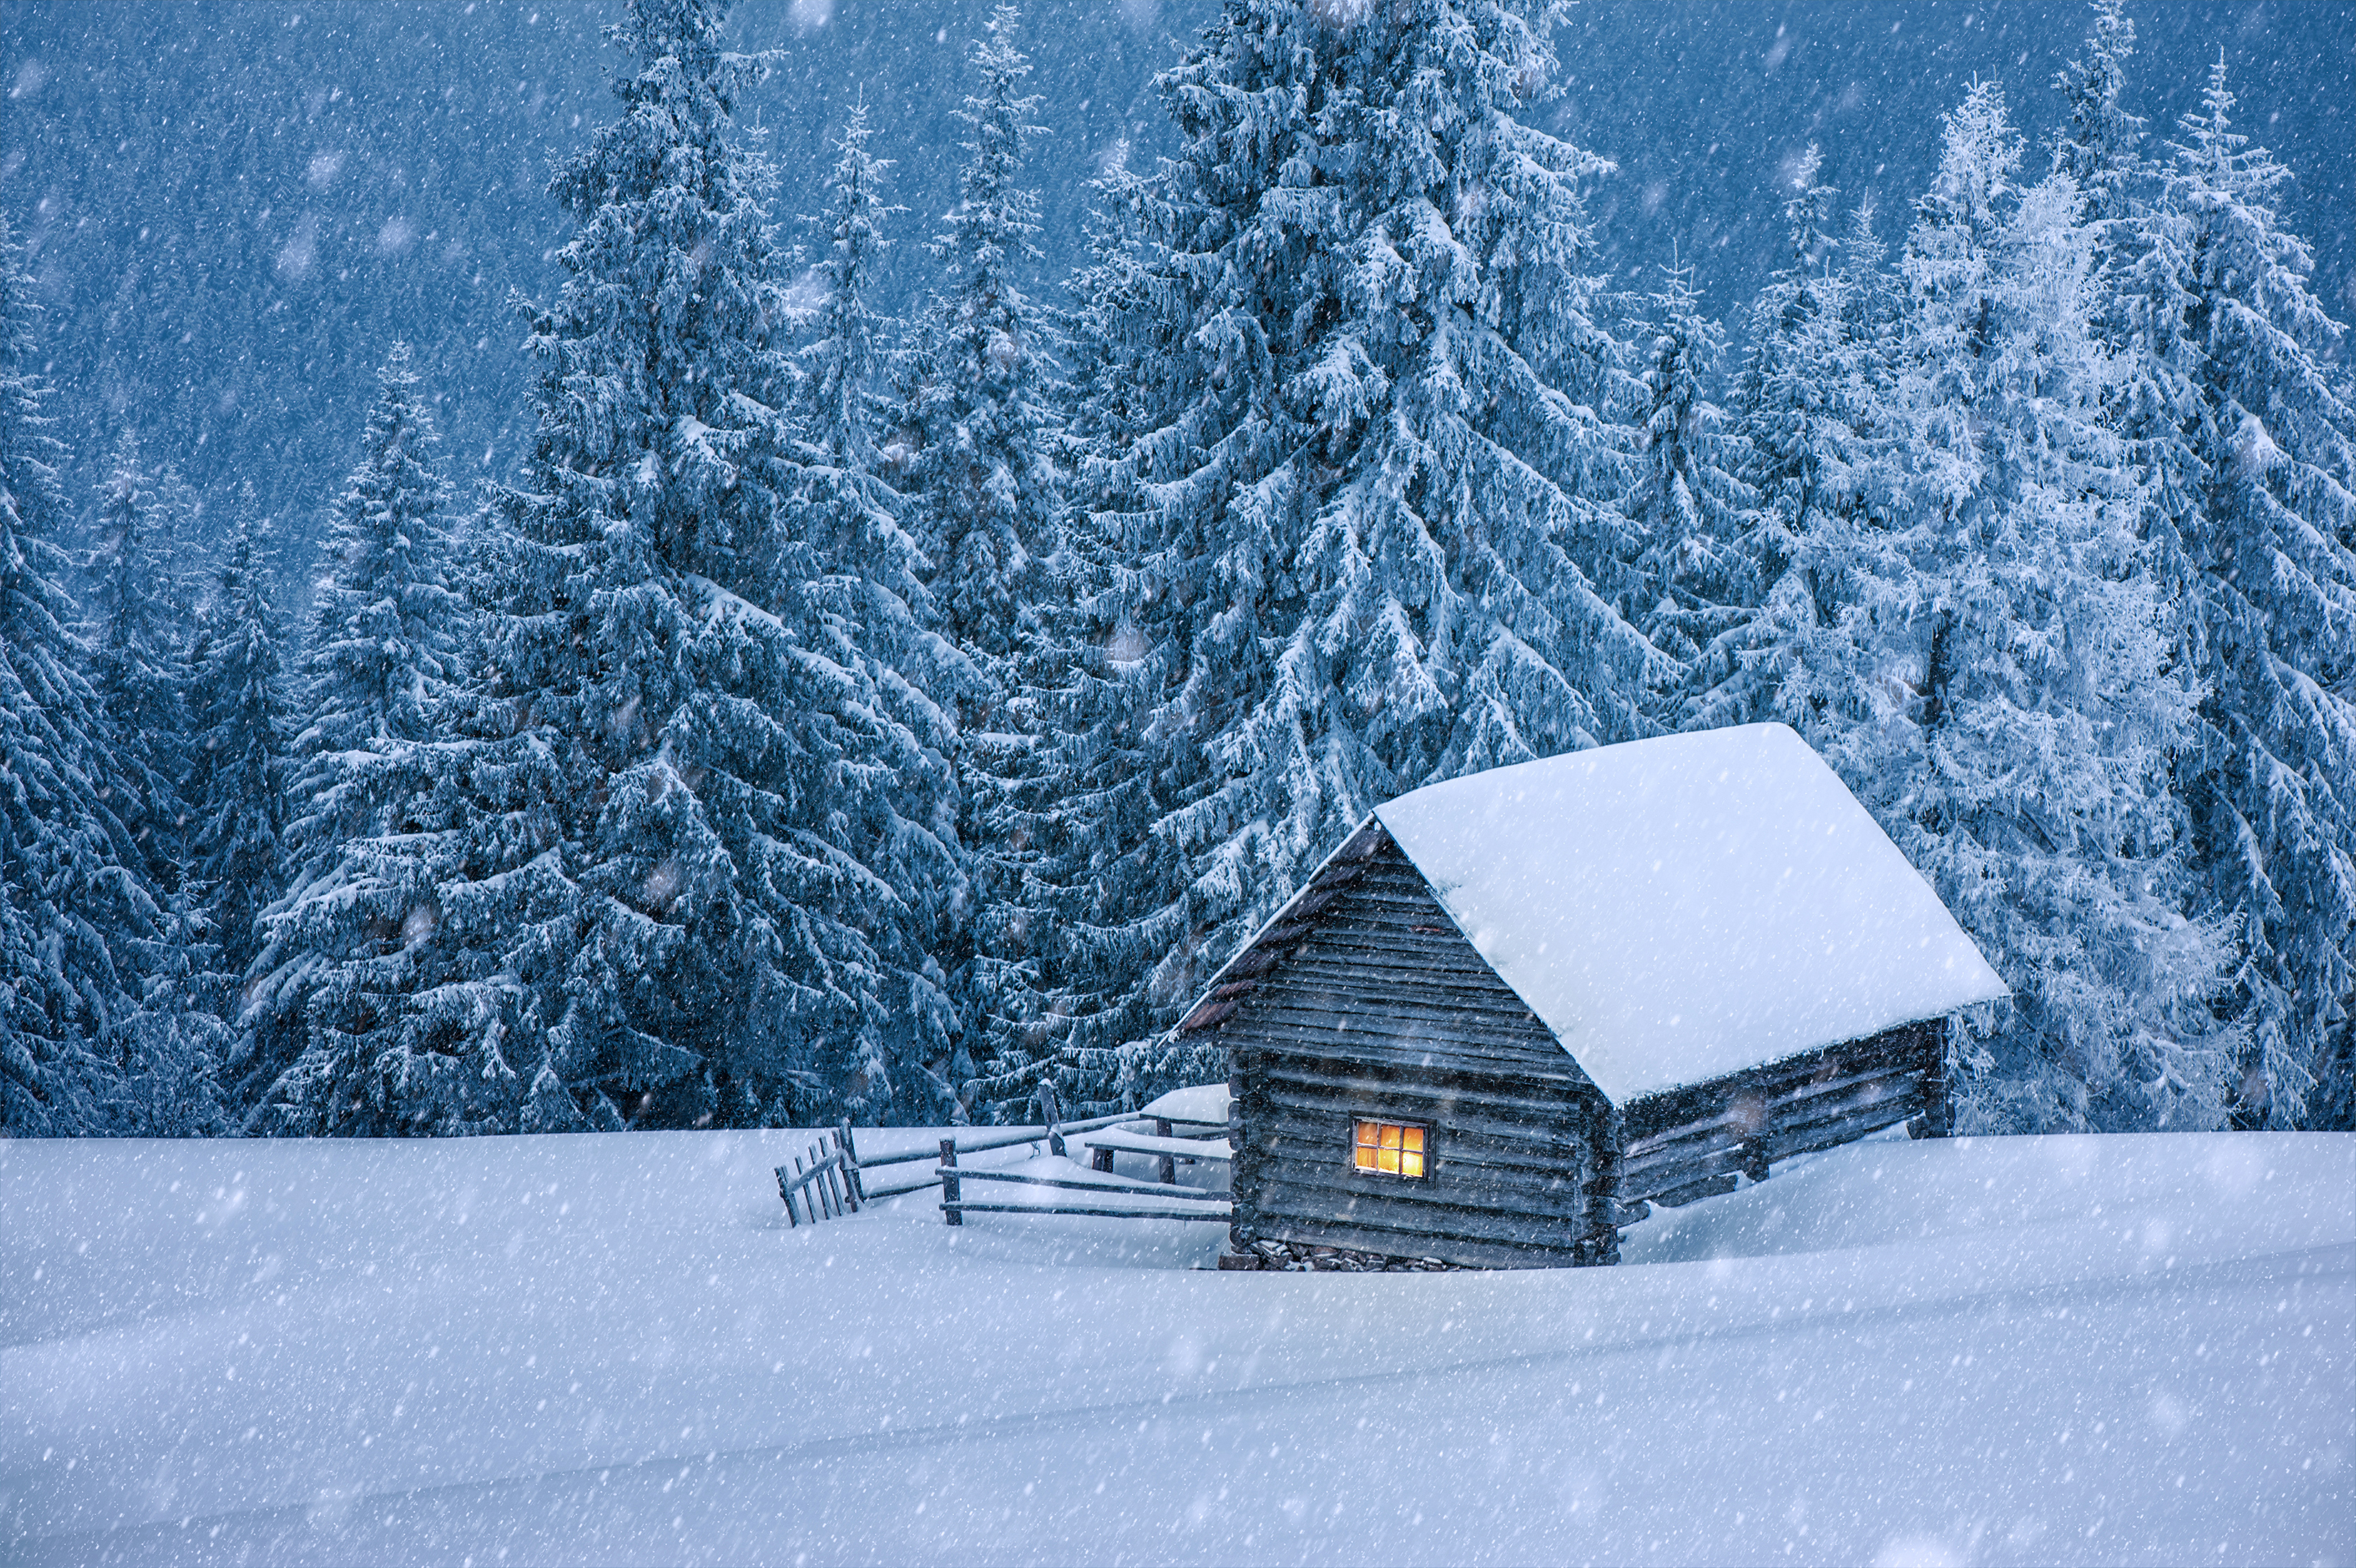 winter cabin clipart